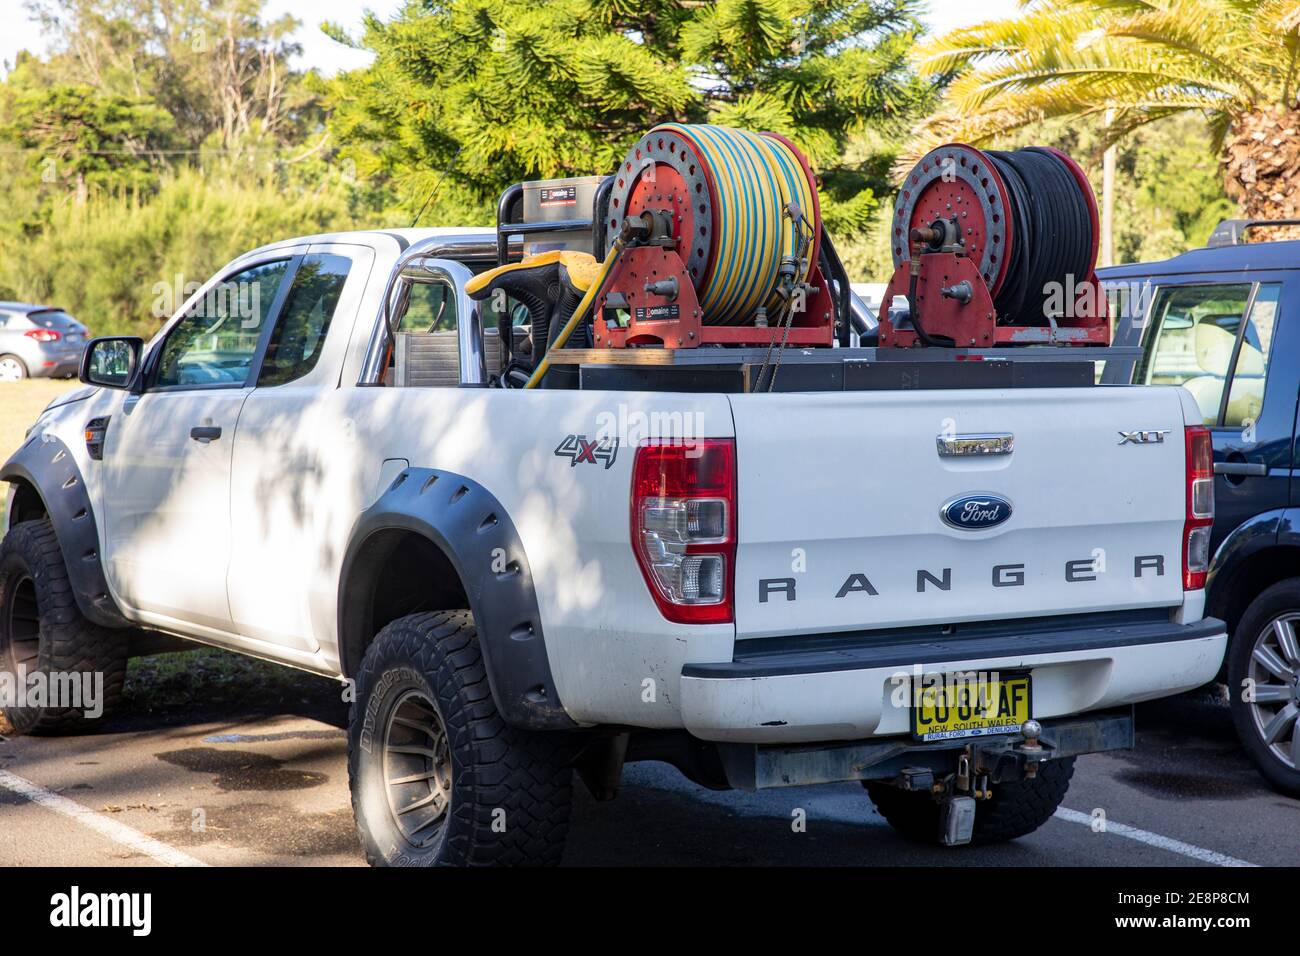 Blanc Ford rangeur ute camion transportant des plombiers équipement et outils, Sydney, Australie Banque D'Images